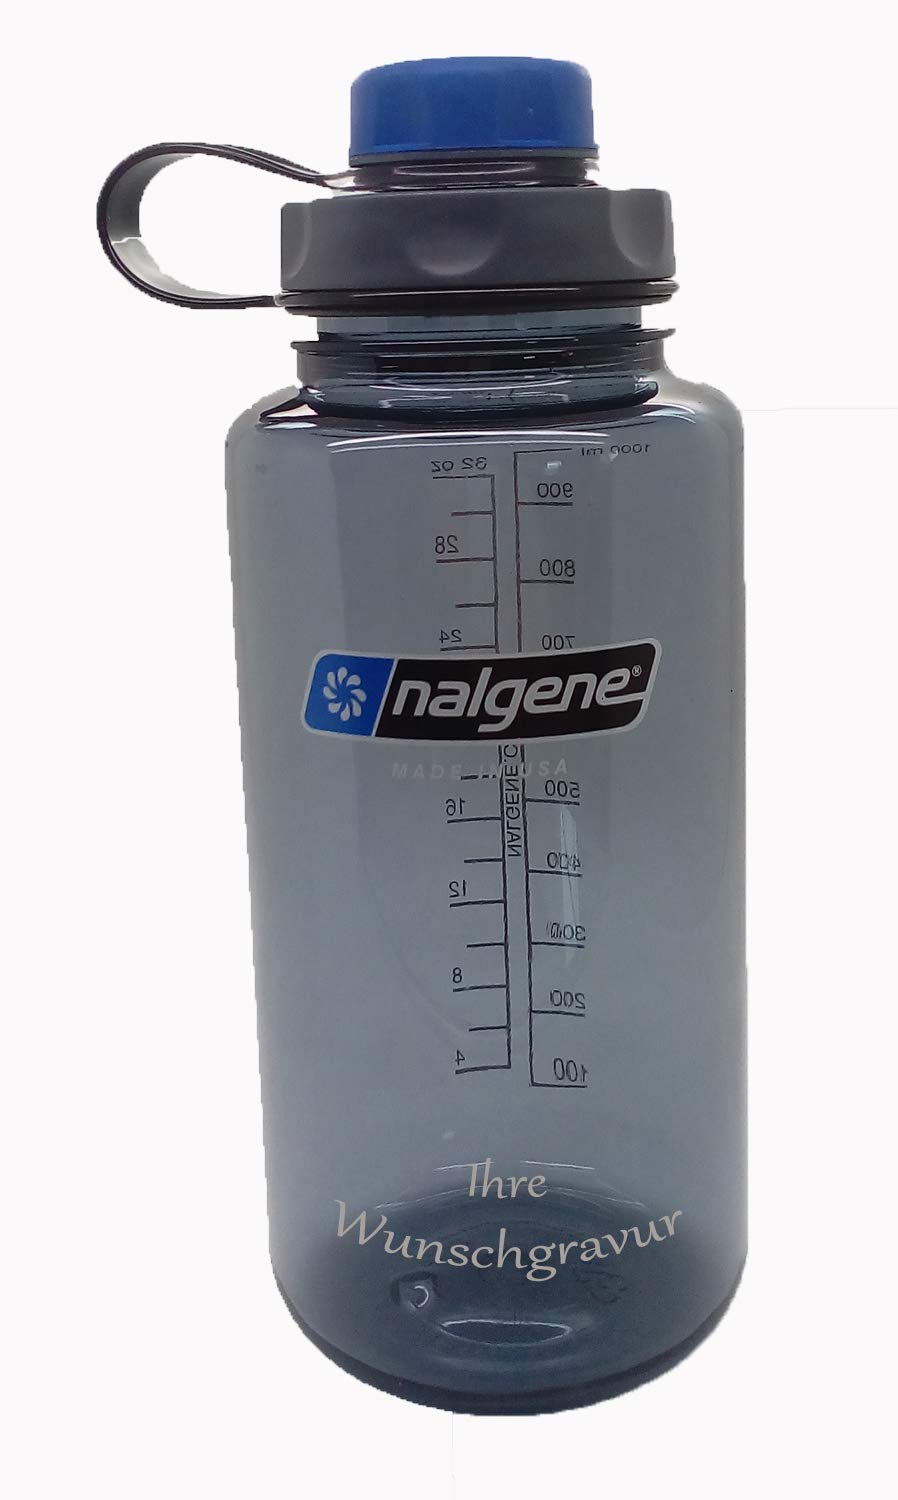 Nalgene Flasche 'Everyday Weithals' - 1 L mit 'capCAP'-Deckel (Grau, mit Namensgravur, Deckel blau)